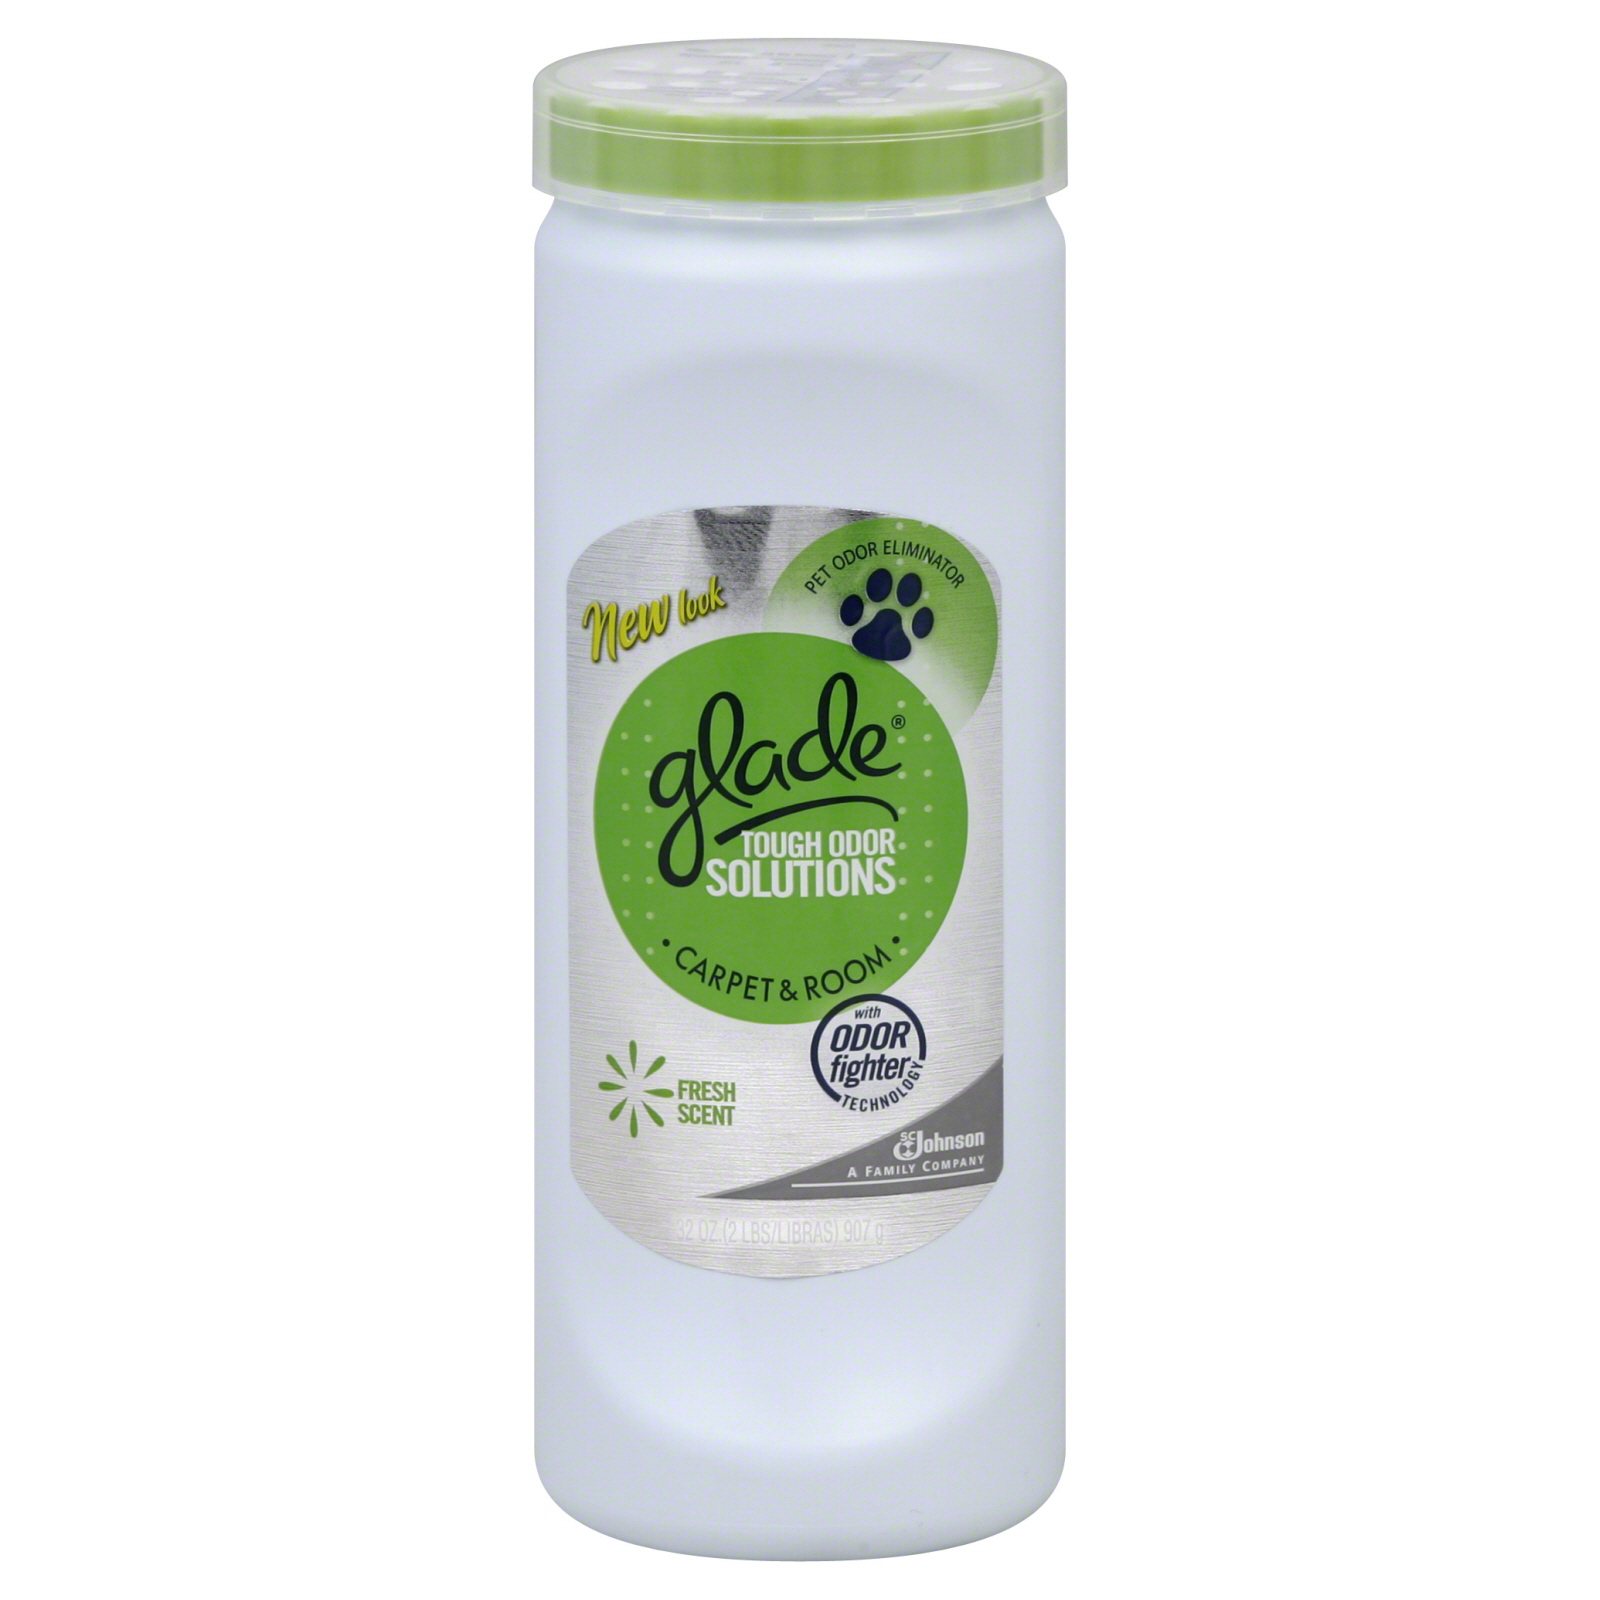 Glade Tough Odor Solutions Odor Eliminator, Pet, Carpet & Room, Fresh Scent 32 oz (2 lb) 907 g